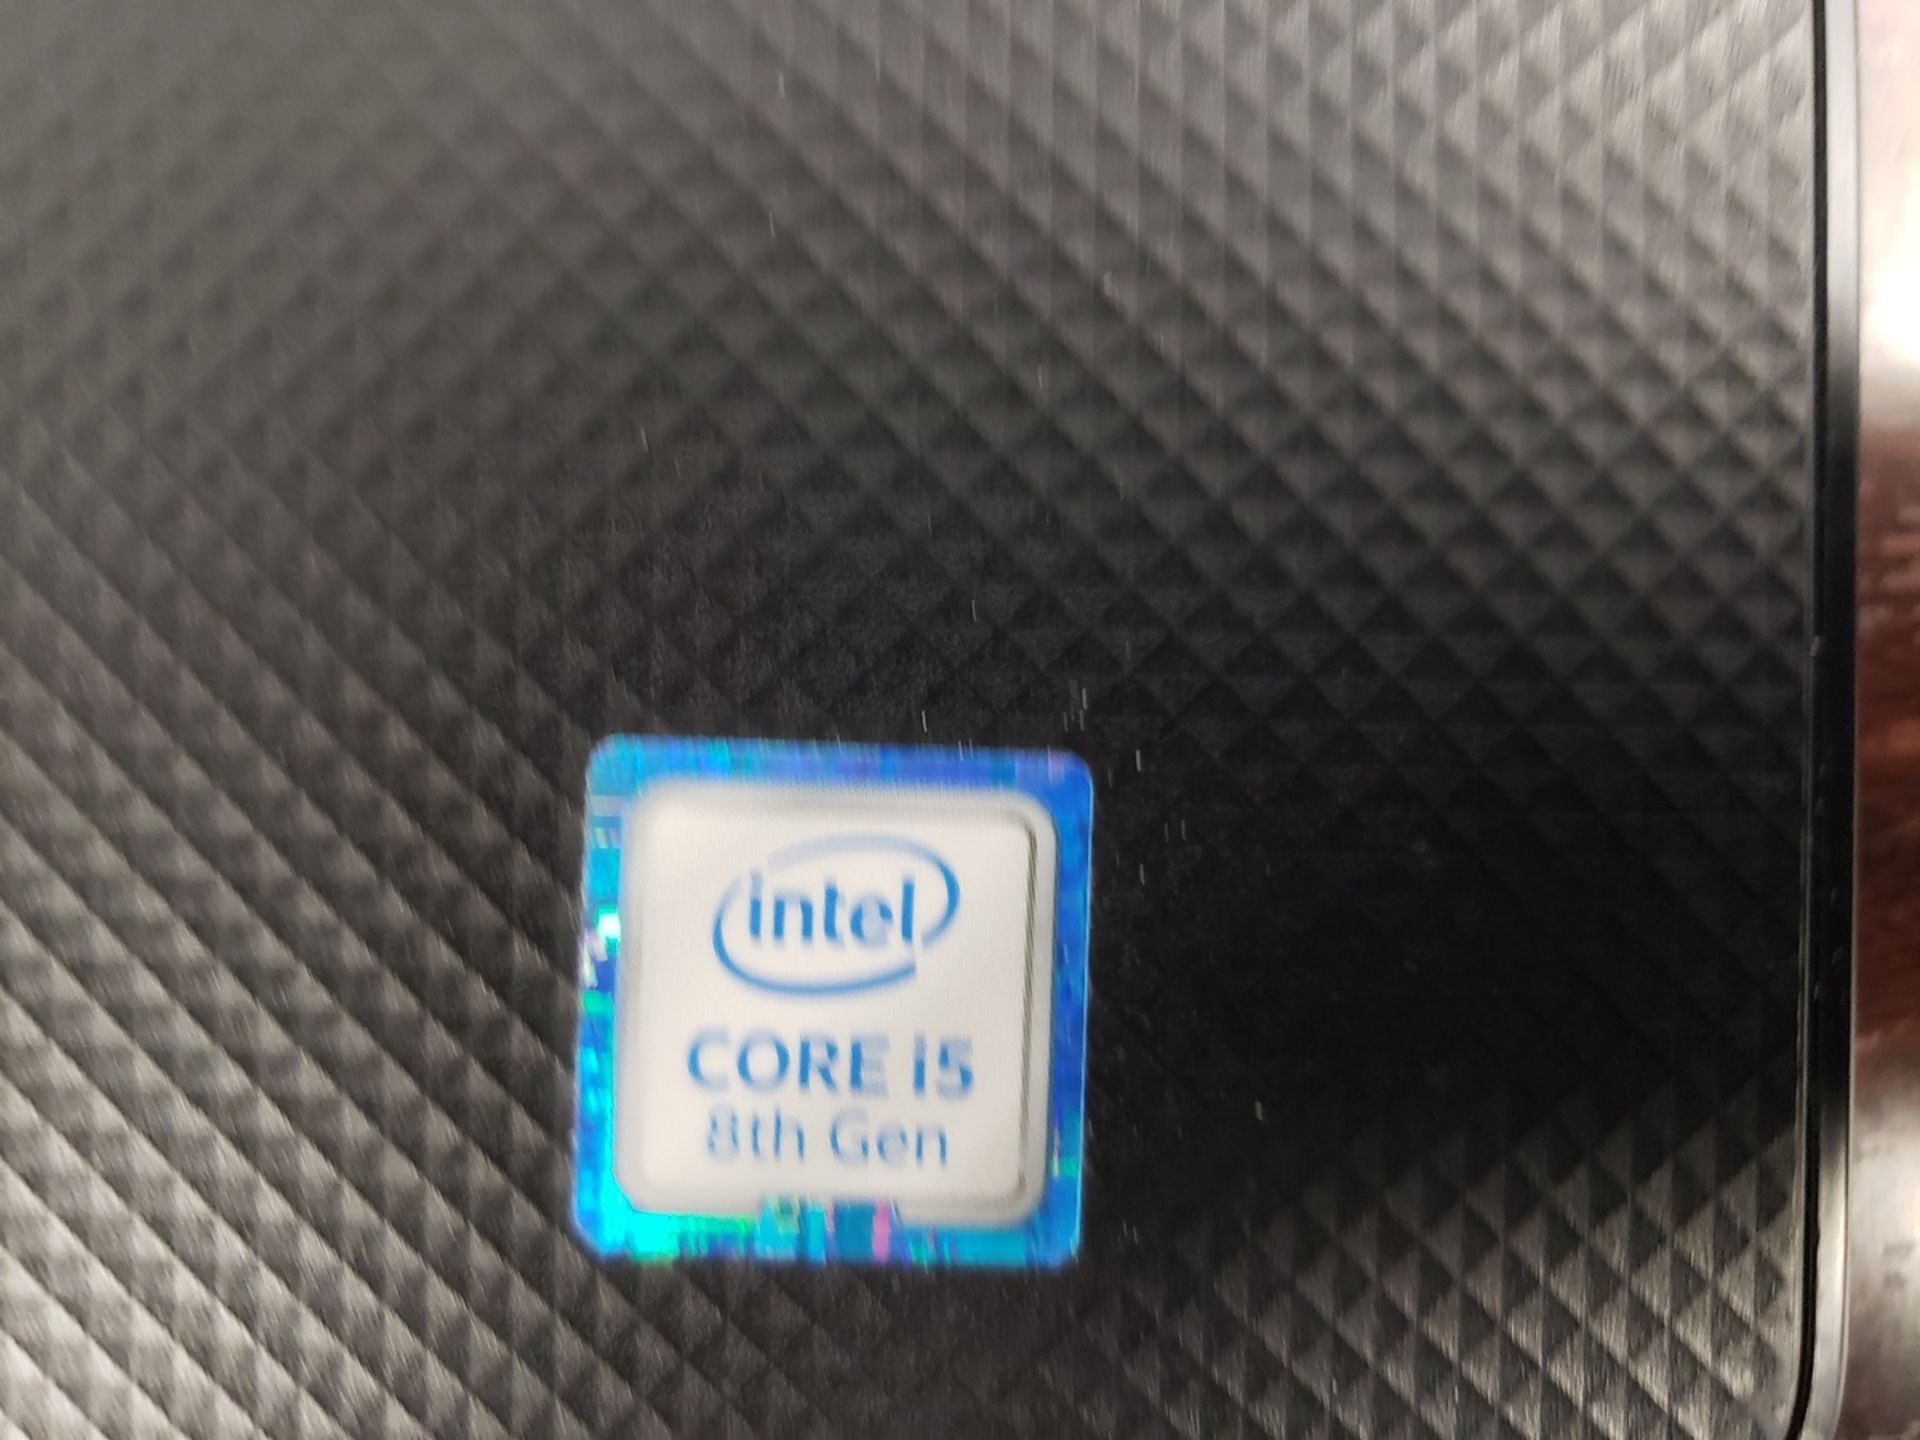 Dell Vostro Laptop Intel Core i5 8th Gen, M# P75F | Rig Fee: $10 - Image 3 of 3